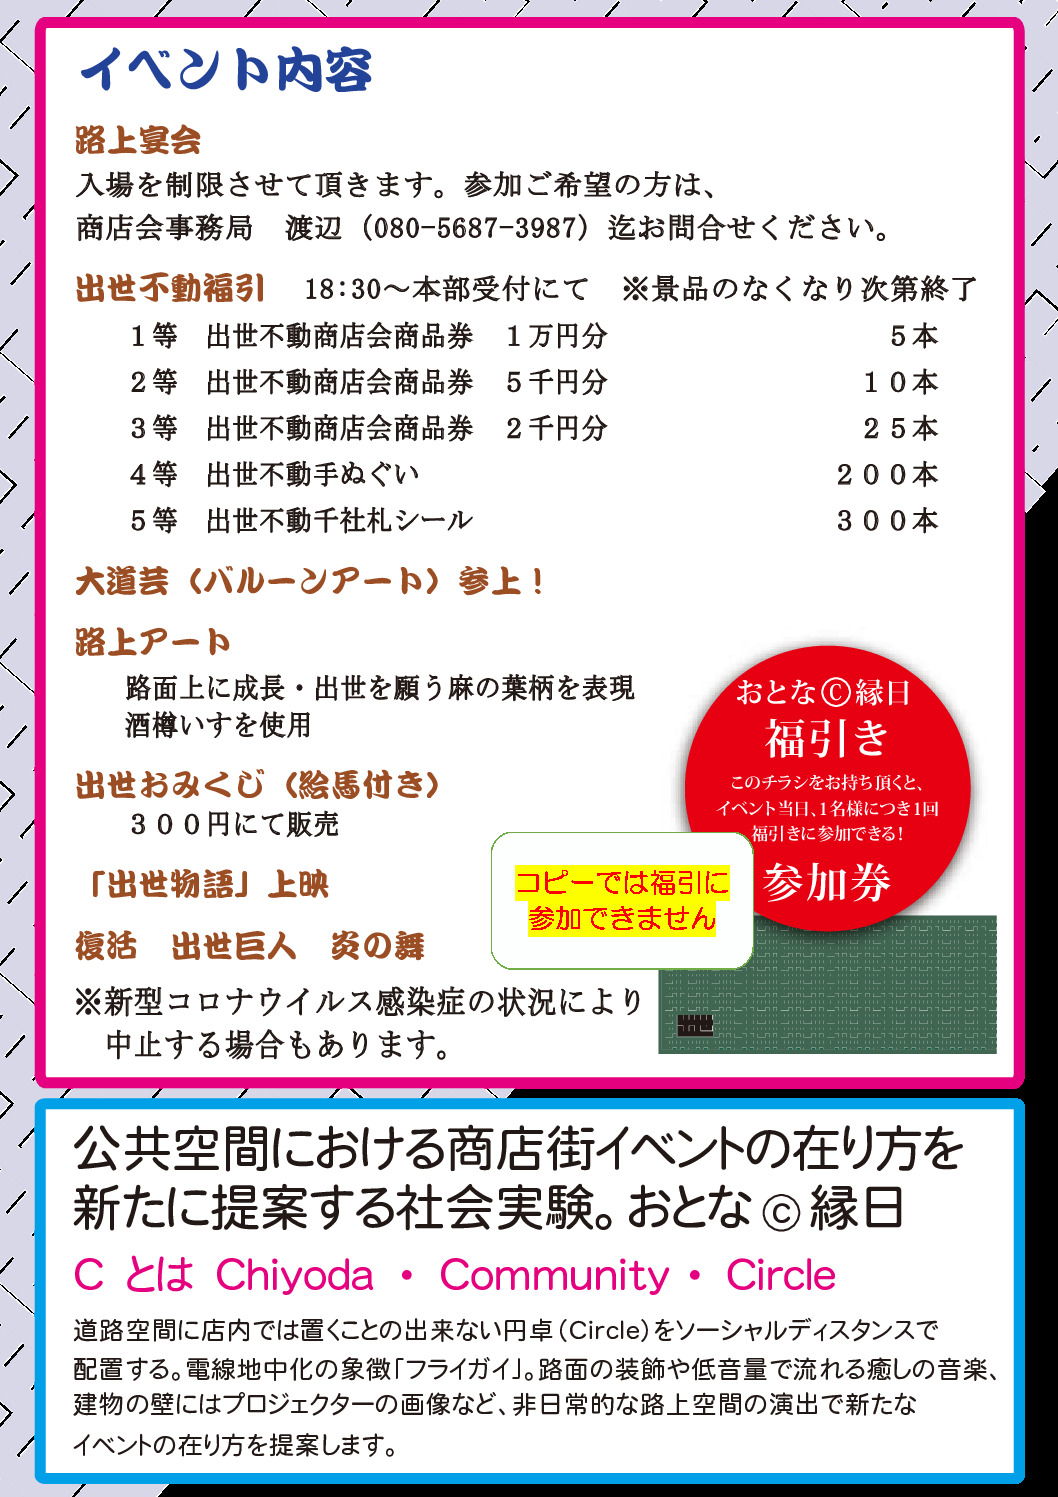 神田技芸祭22　イベント内容【本イベントは中止となりました。】